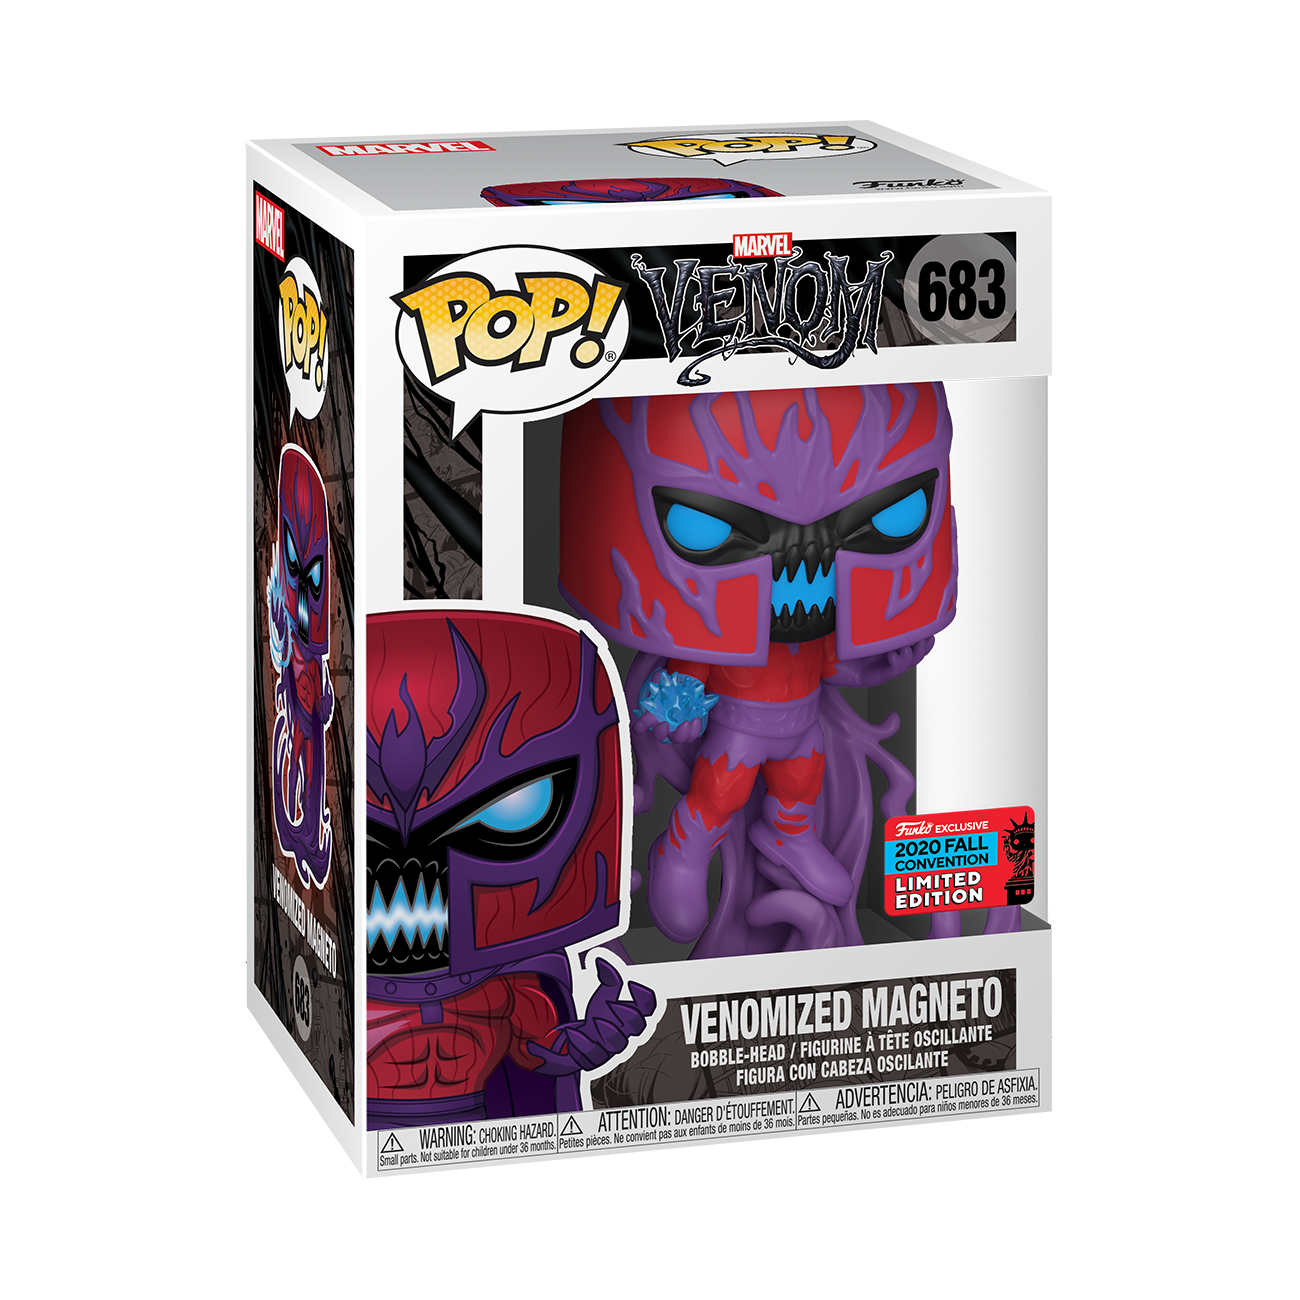 Funko Pop! Marvel - Marvel Venom - Venomized Magneto (Fall Convention 2020 Exclusive)